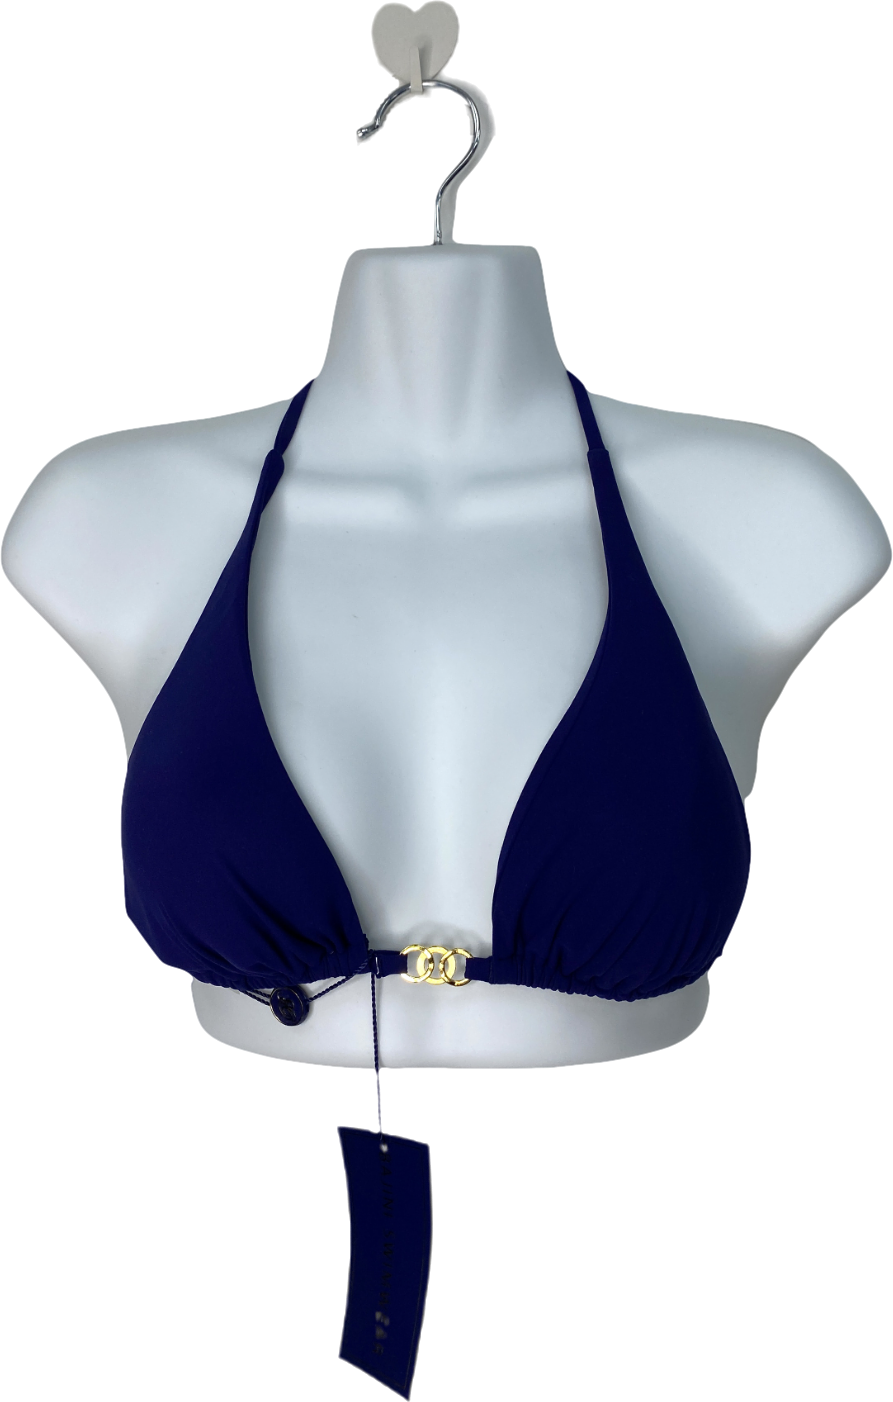 bajini swimwear Blue Lourdes Bikini Top UK S